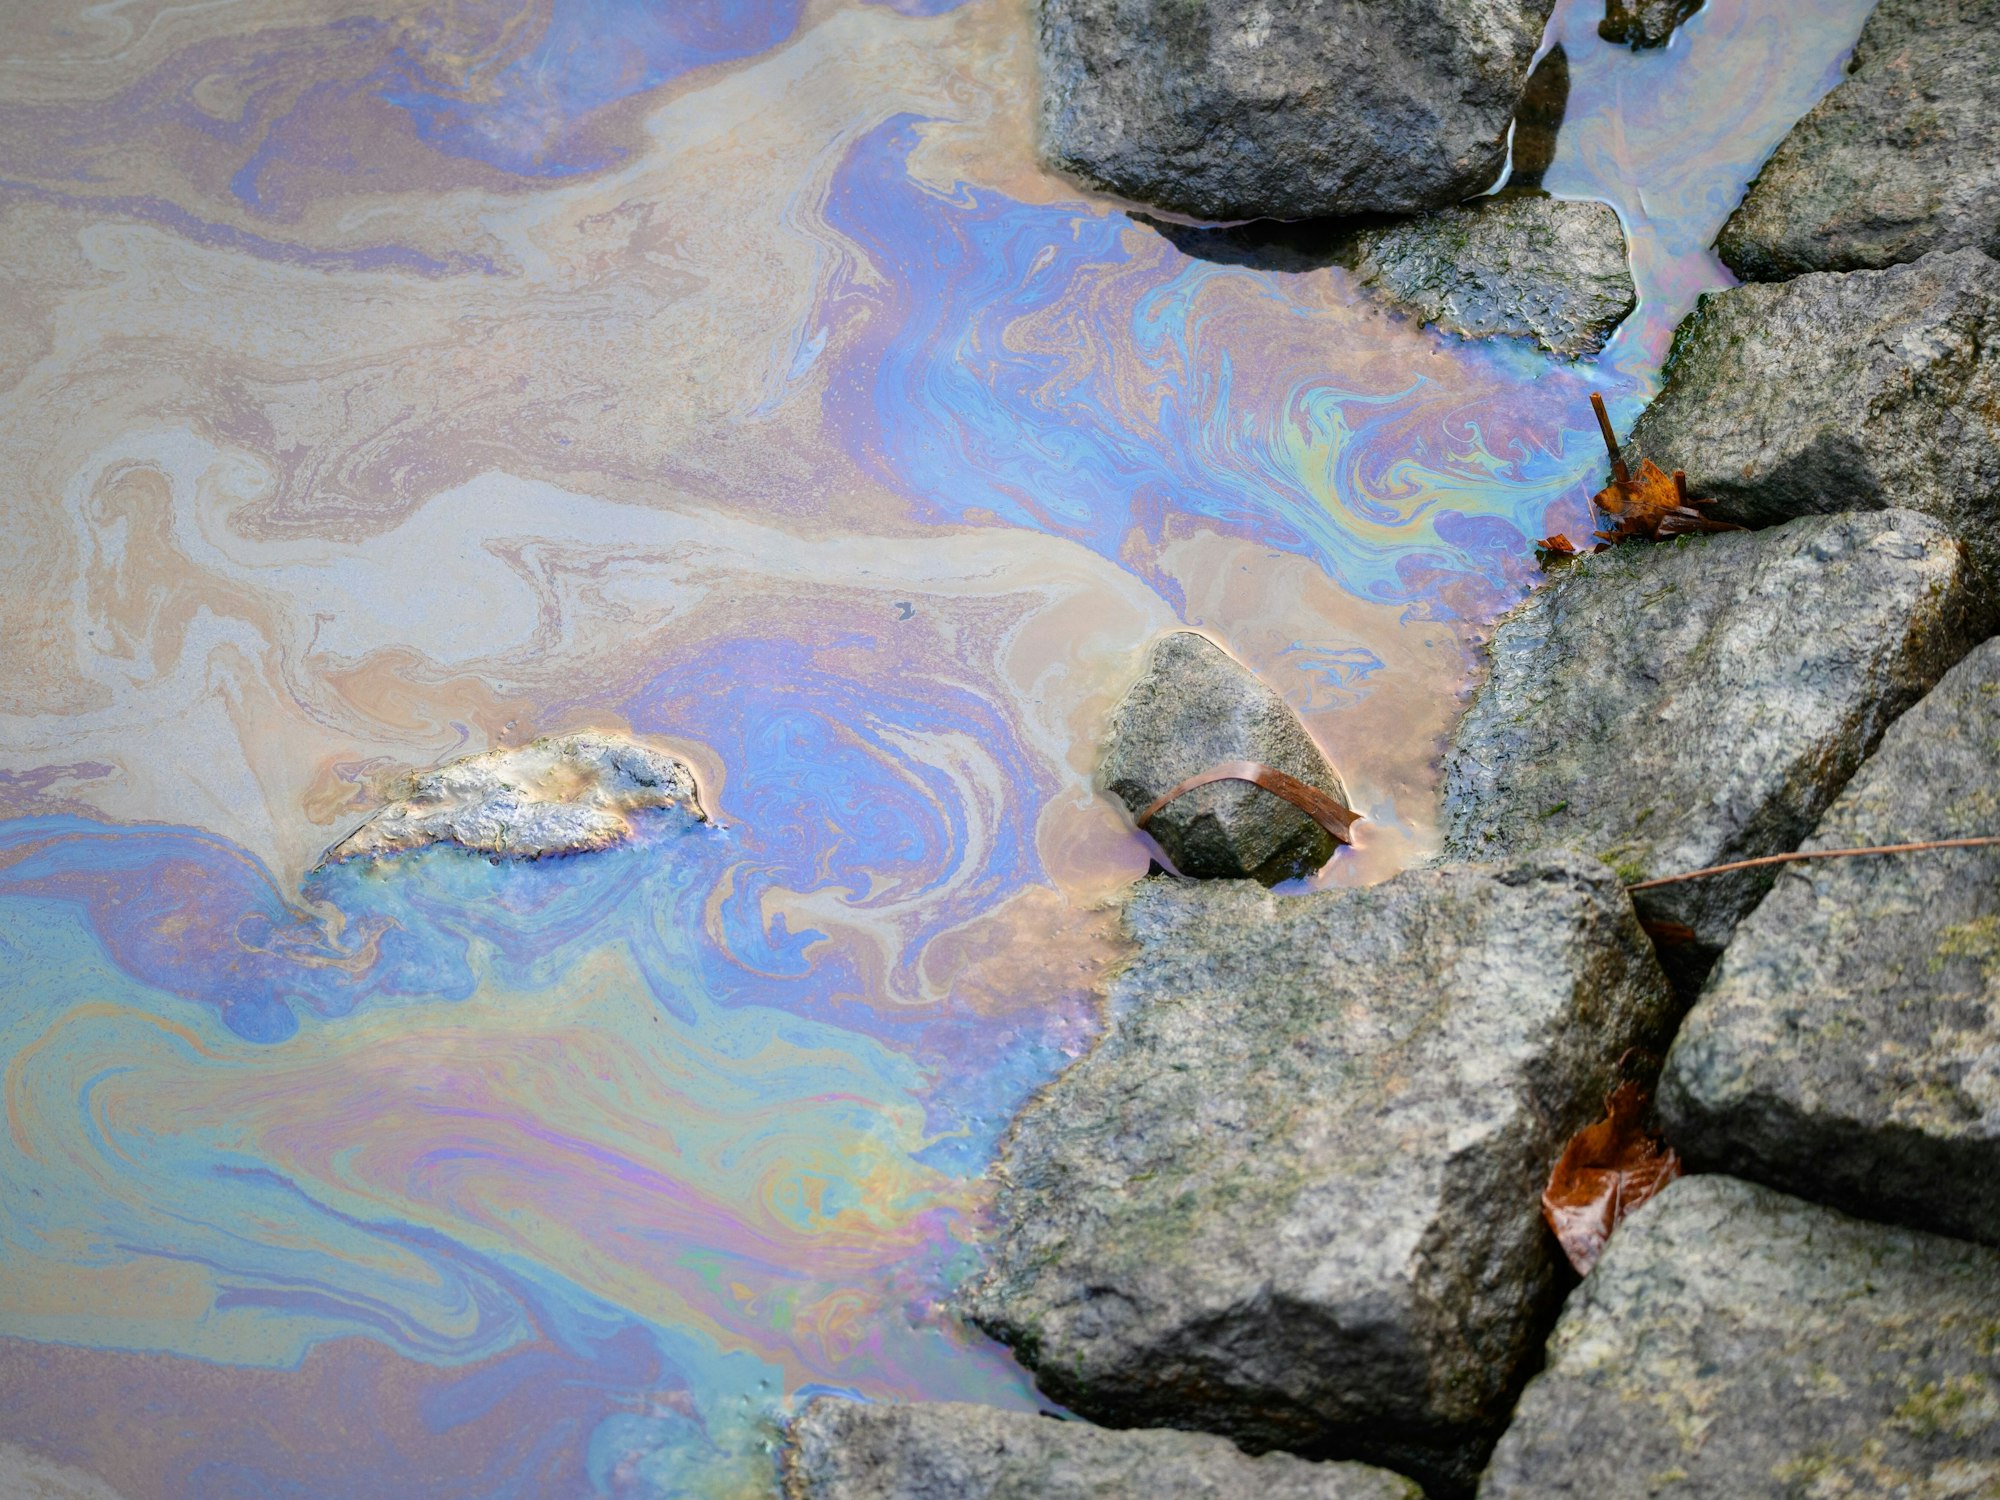 Ein Ölfilm in Regenbogenfarben, daneben liegen Steine.